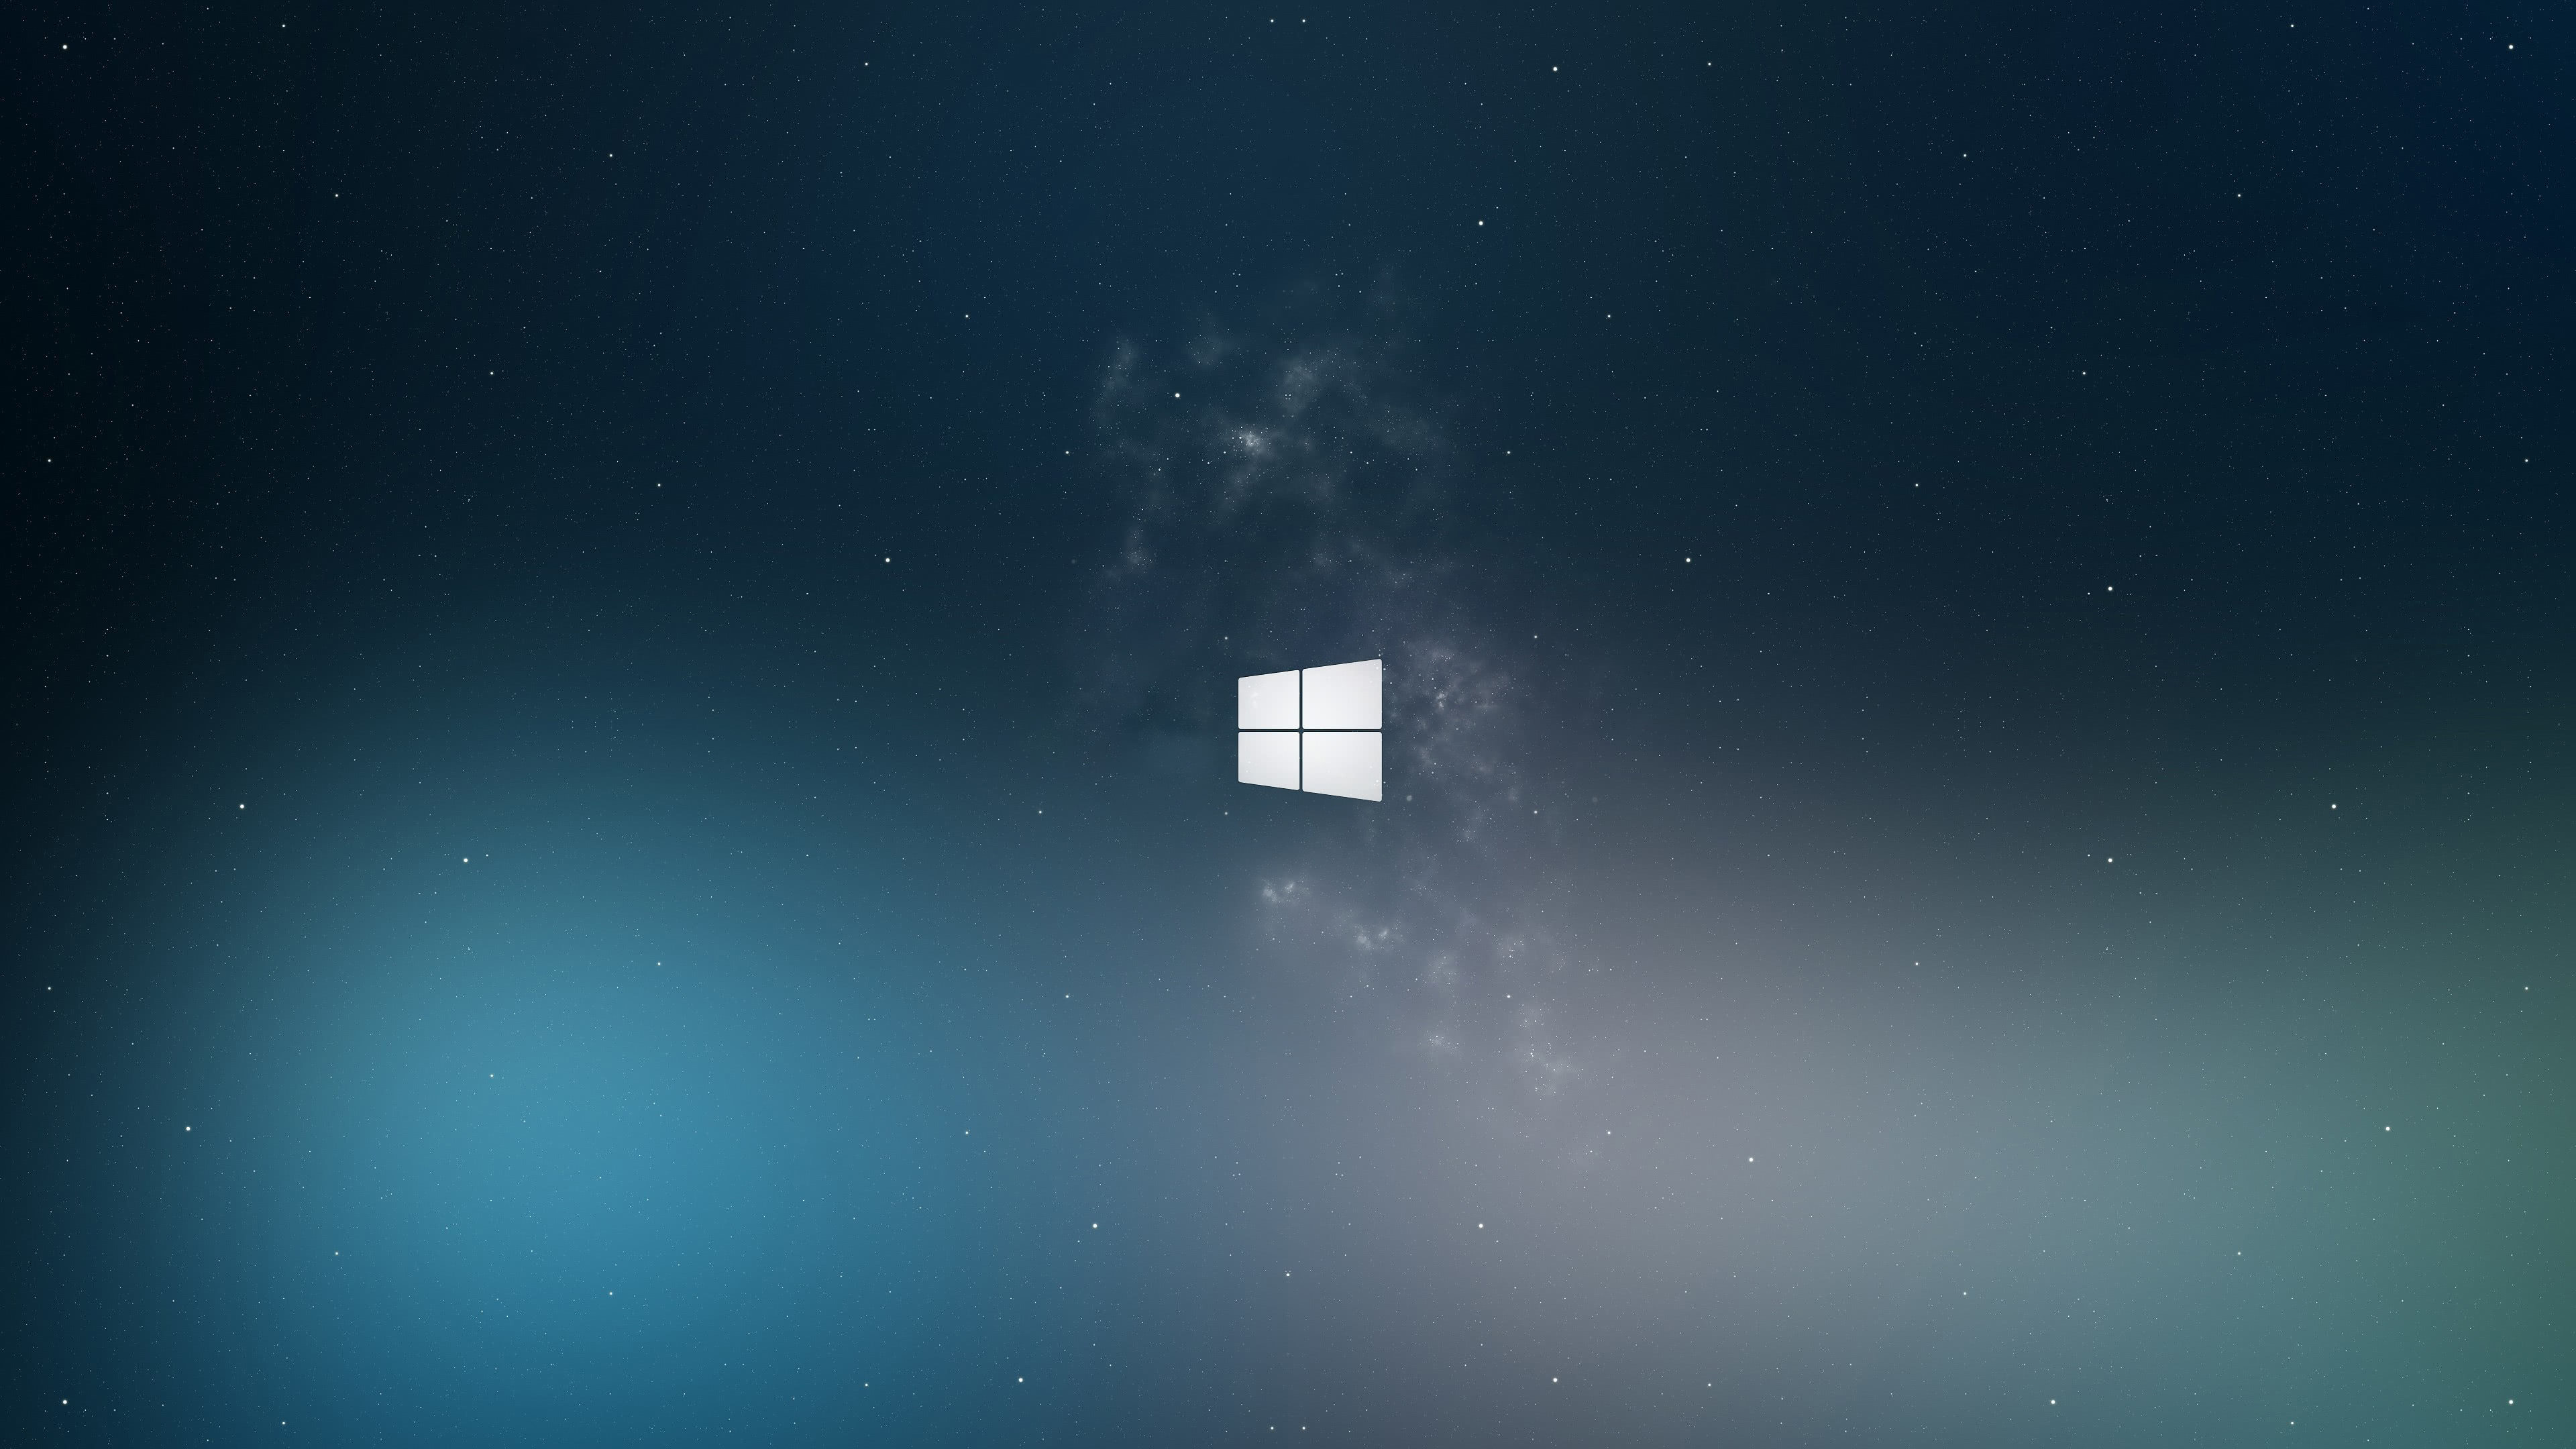 Windows 10 Uhd 4k Wallpapers Pixelz